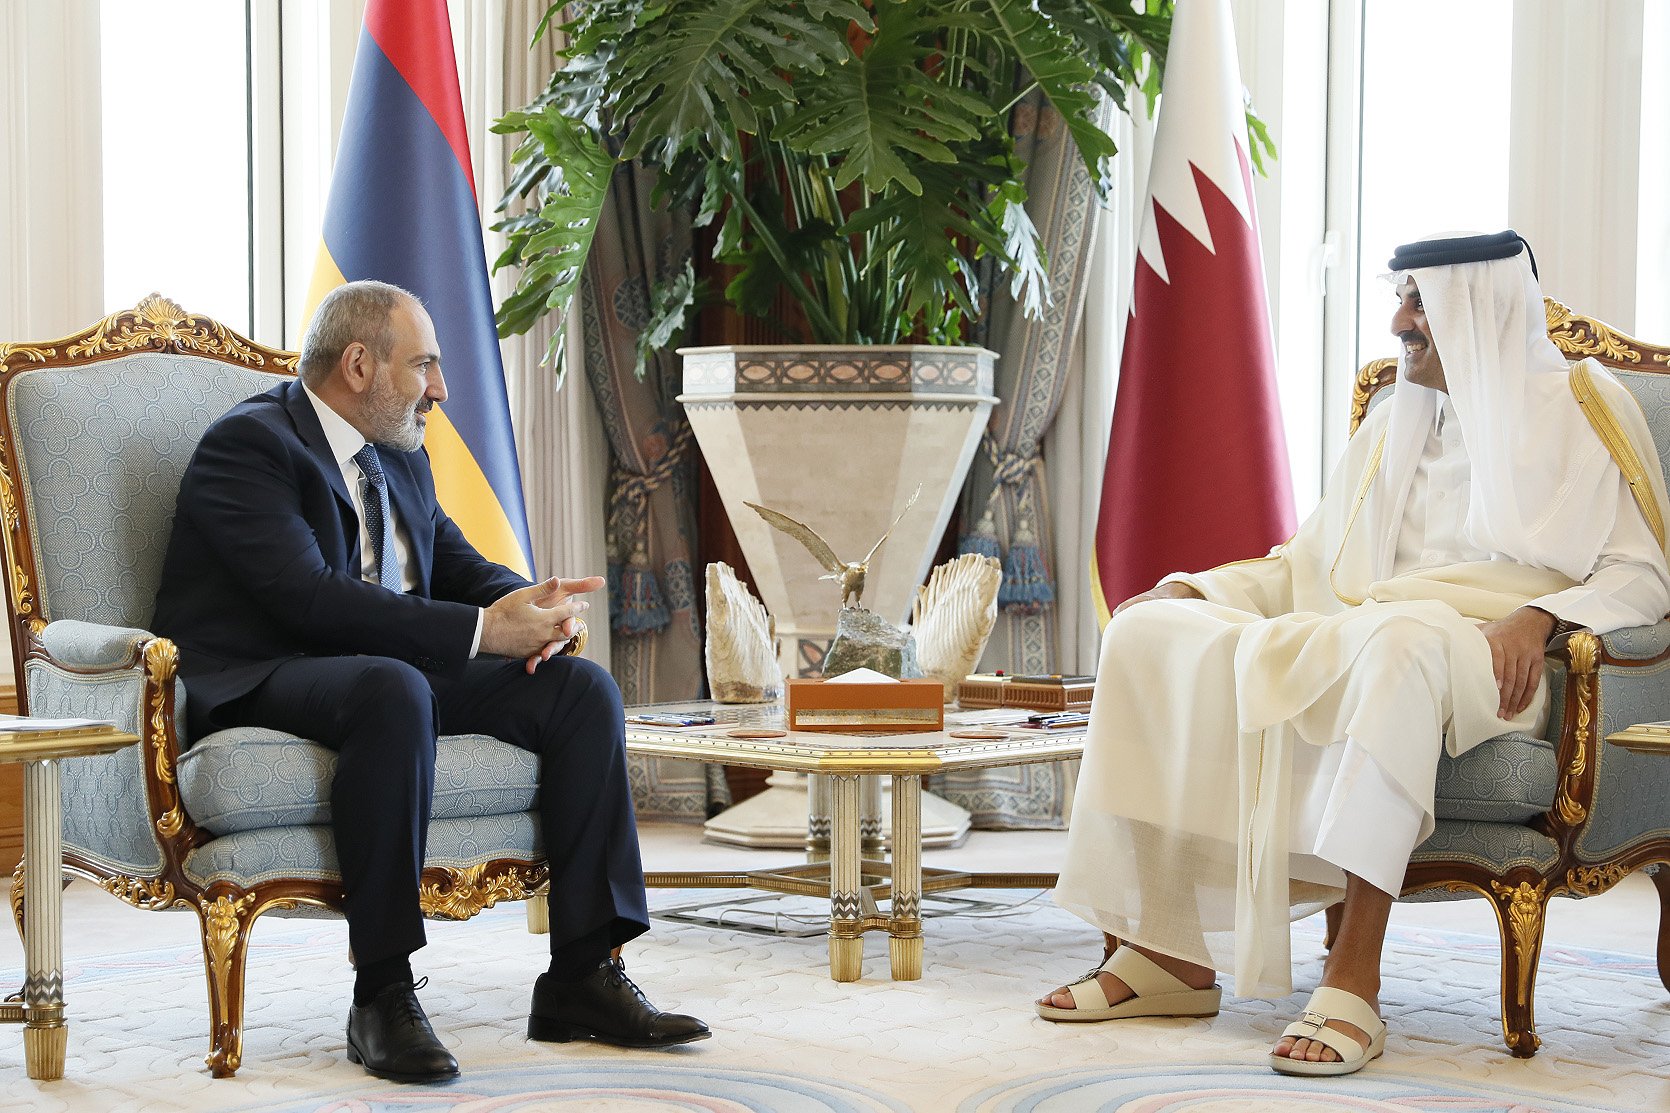 ՀՀ վարչապետը և Կատարի Էմիրը քննարկել են երկու երկրների համագործակցության զարգացմանը վերաբերող մի  շարք հարցեր